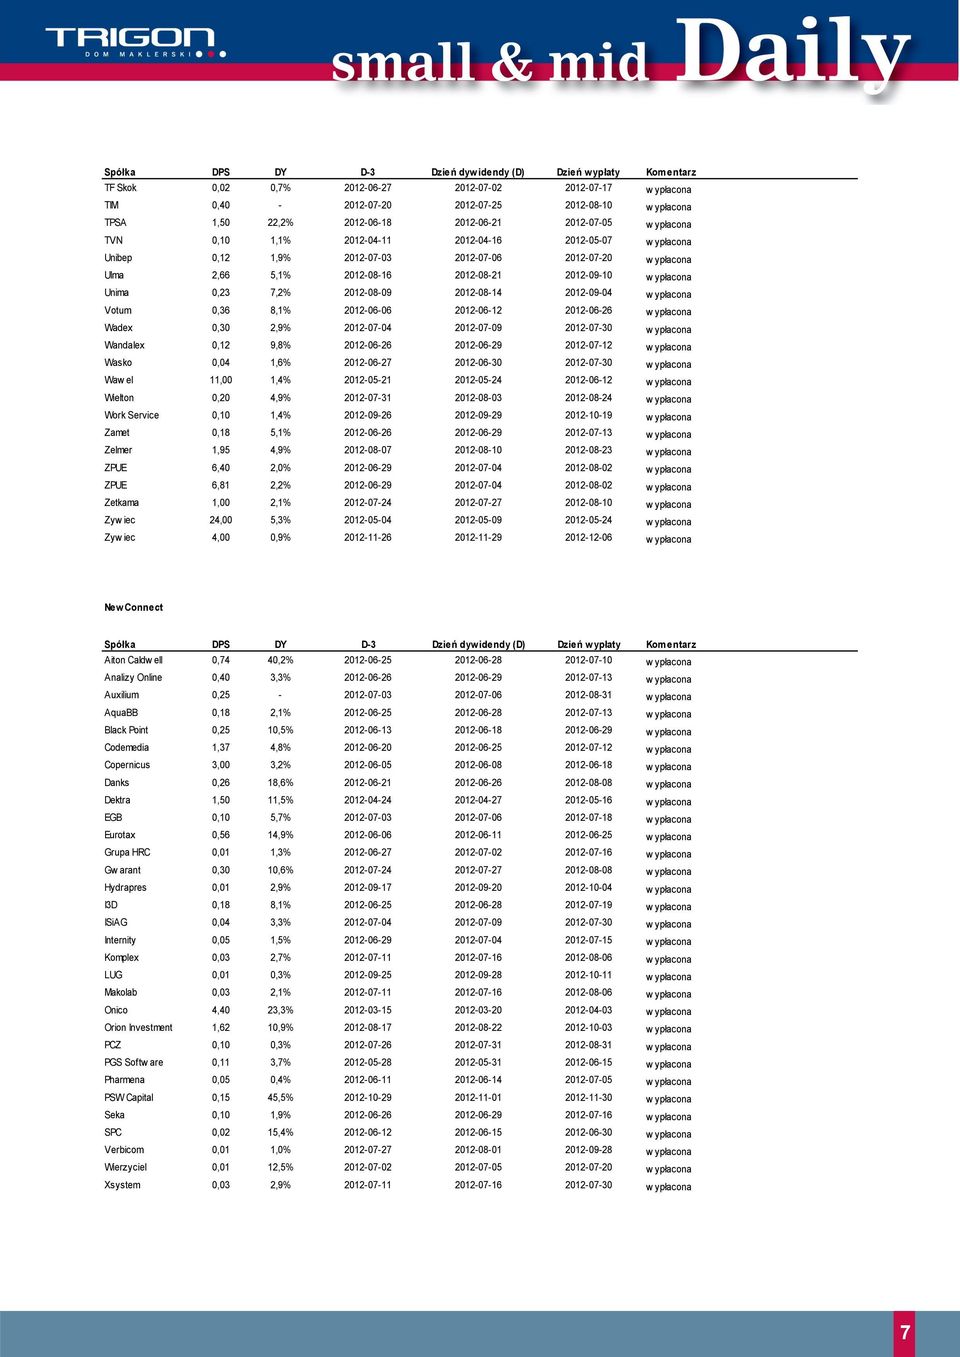 w ypłacona Unima 0,23 7,2% 2012-08-09 2012-08-14 2012-09-04 w ypłacona Votum 0,36 8,1% 2012-06-06 2012-06-12 2012-06-26 w ypłacona Wadex 0,30 2,9% 2012-07-04 2012-07-09 2012-07-30 w ypłacona Wandalex